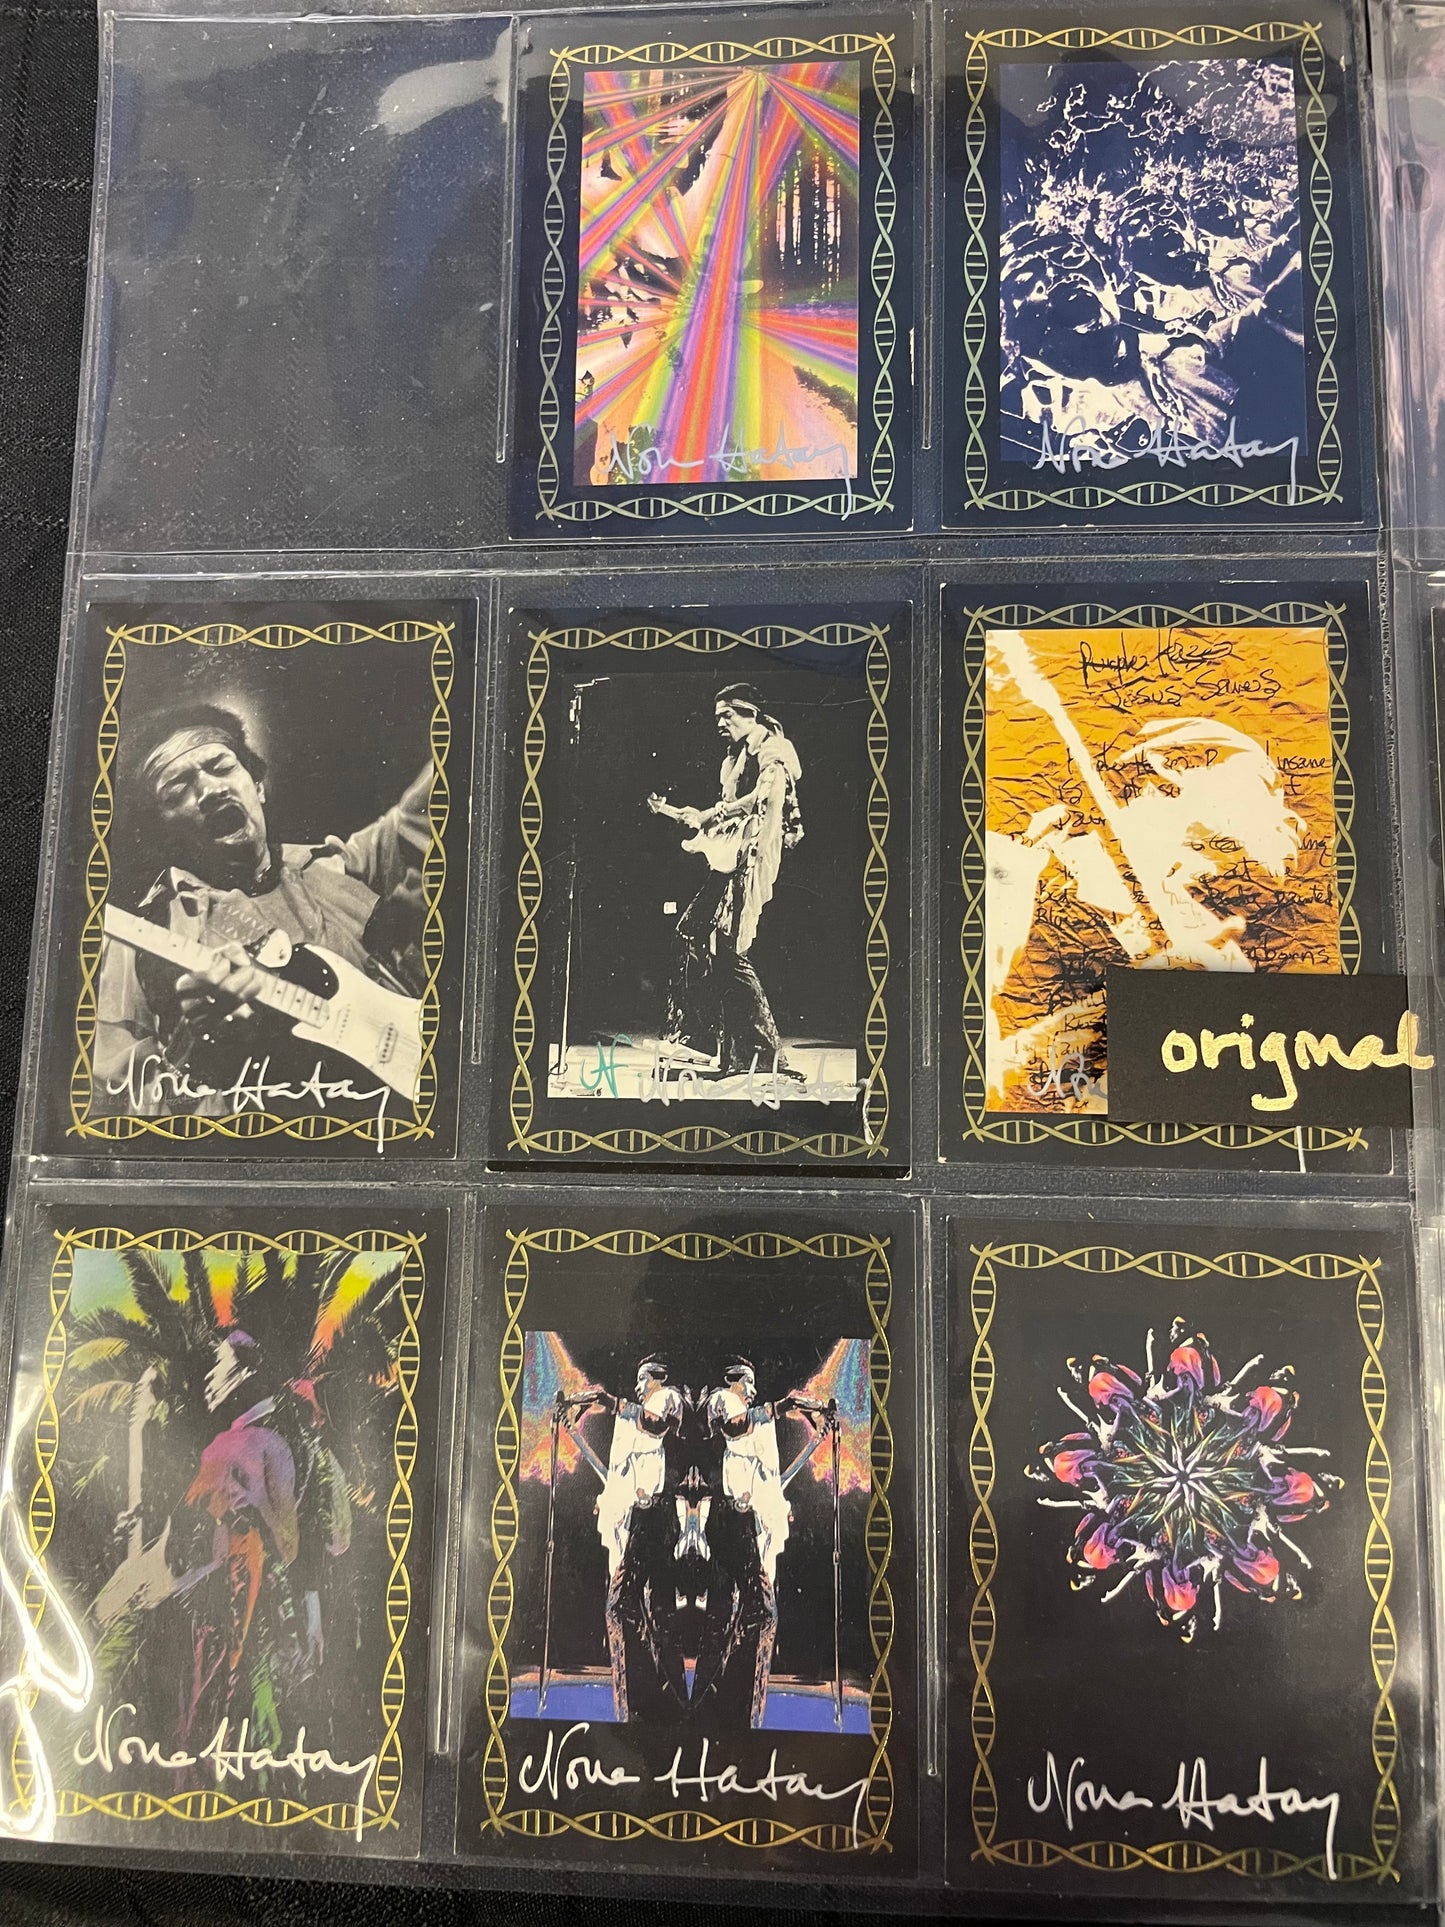 Jimi Hendrix - Trading Cards by Nona Hatay